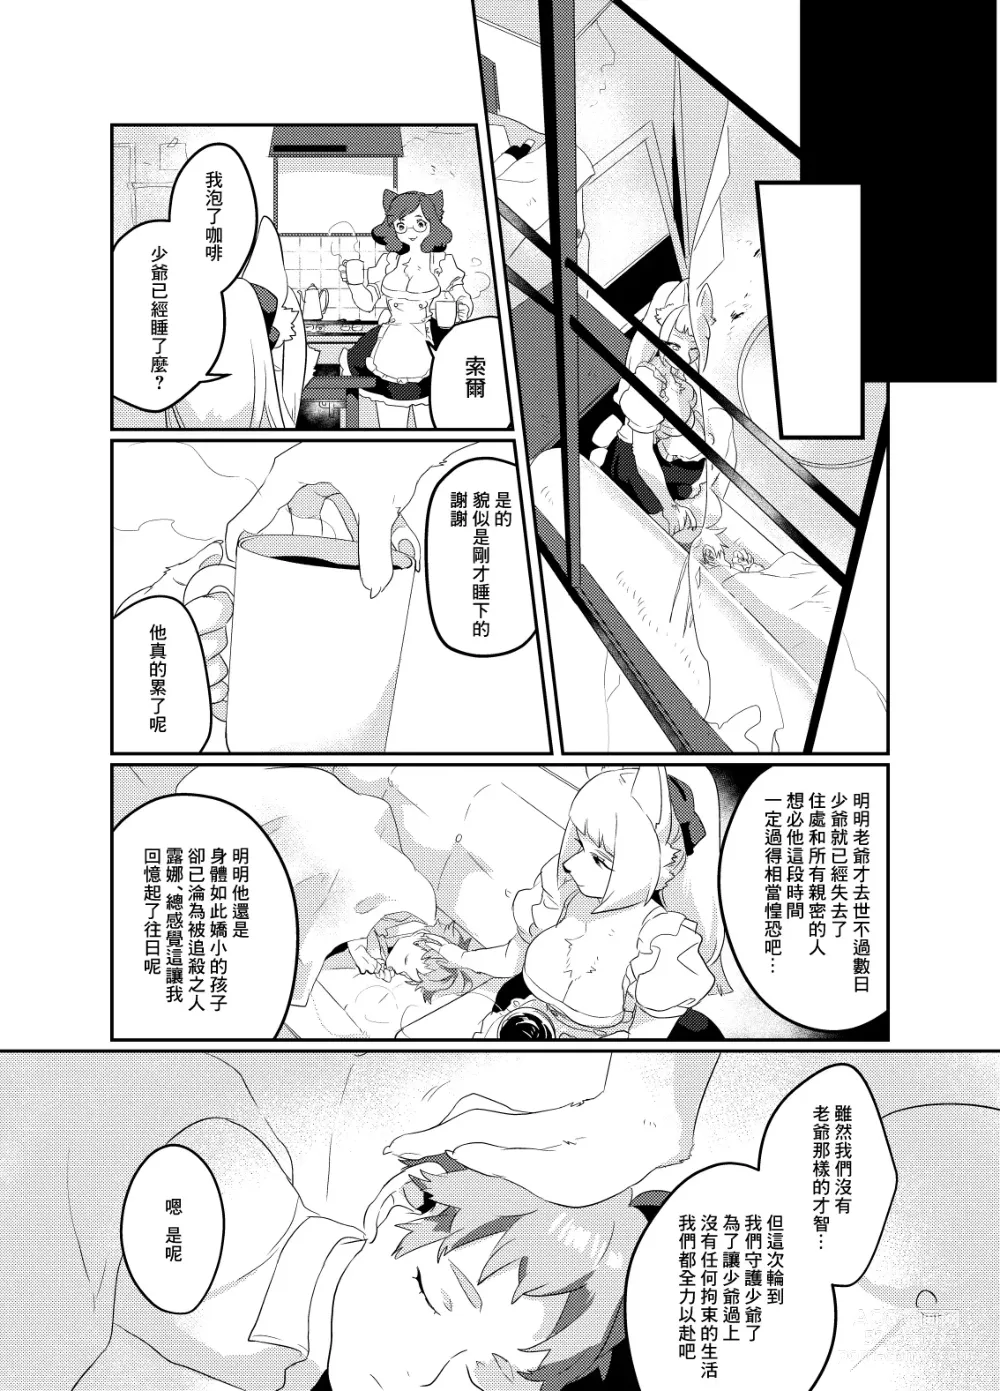 Page 22 of doujinshi Meido inHEAVEN